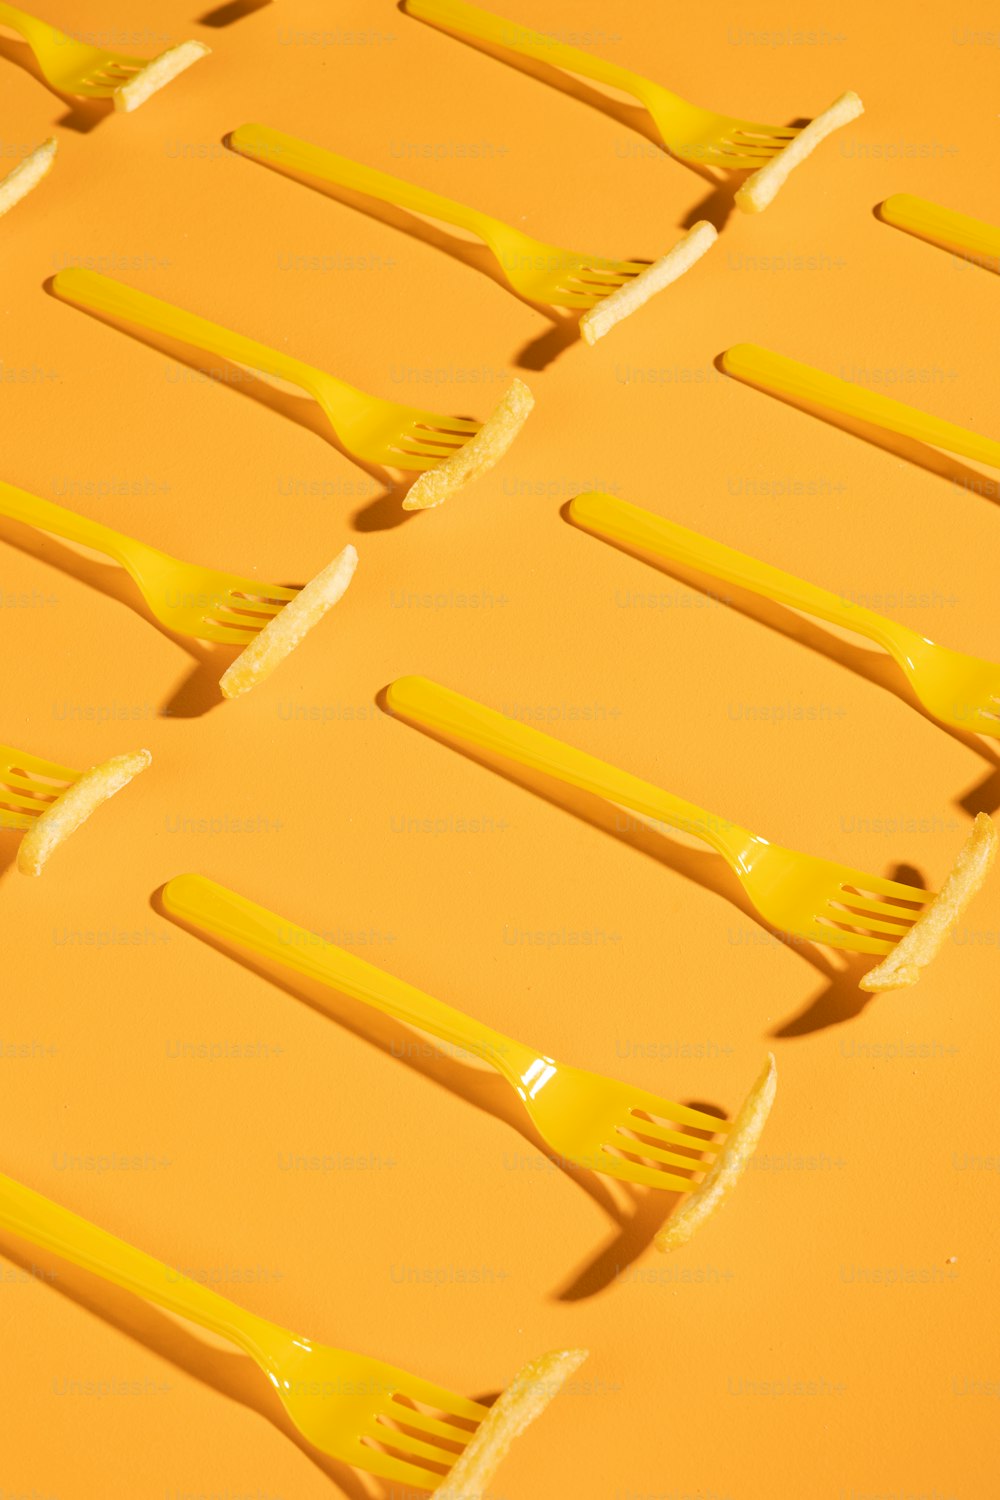 un gruppo di spazzolini da denti gialli seduti uno sopra l'altro